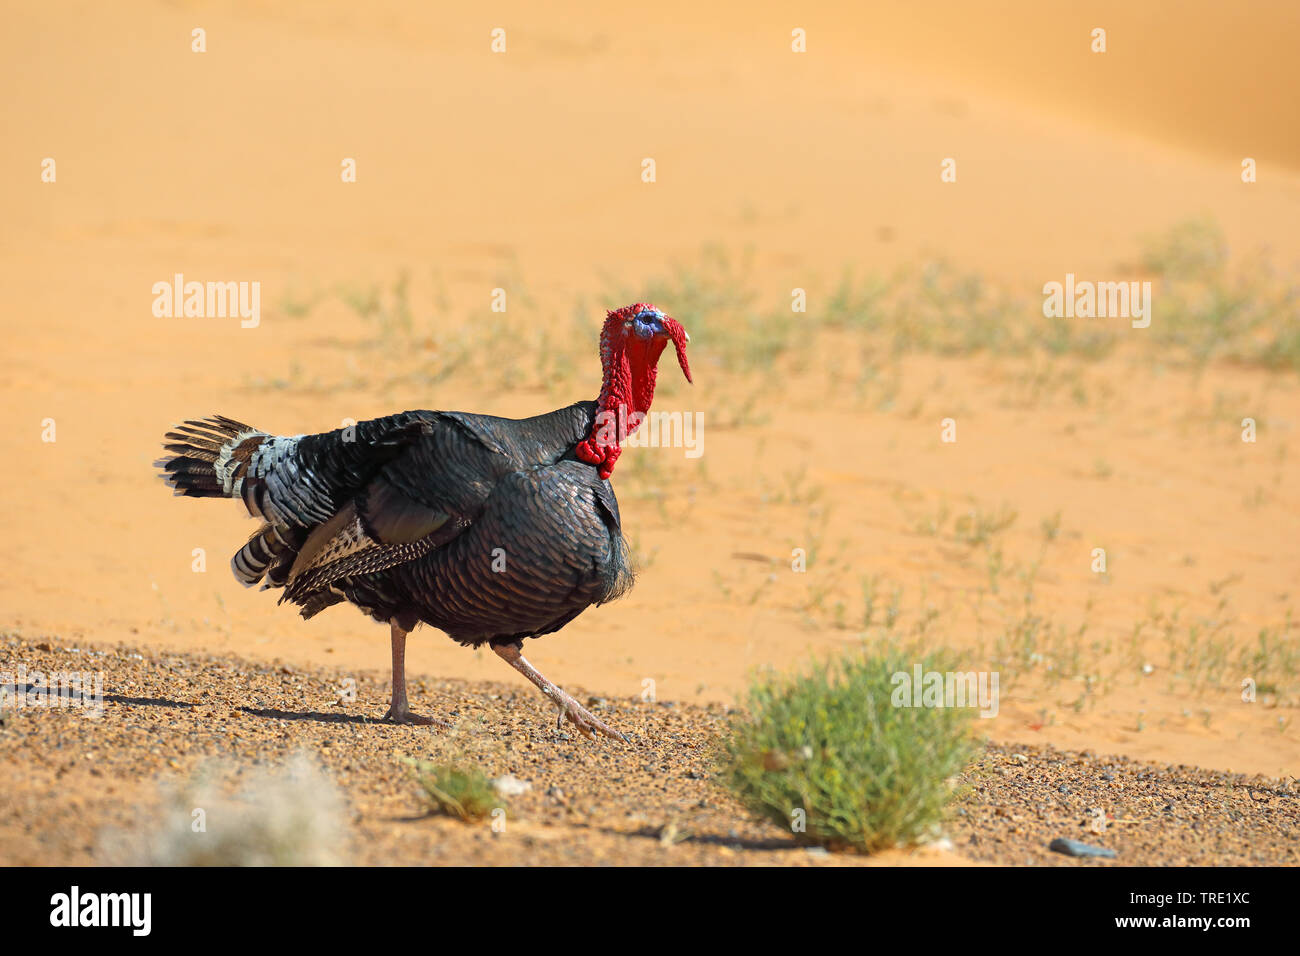 common turkey (Meleagris gallopavo), walking male, Morocco, Merzouga Stock Photo